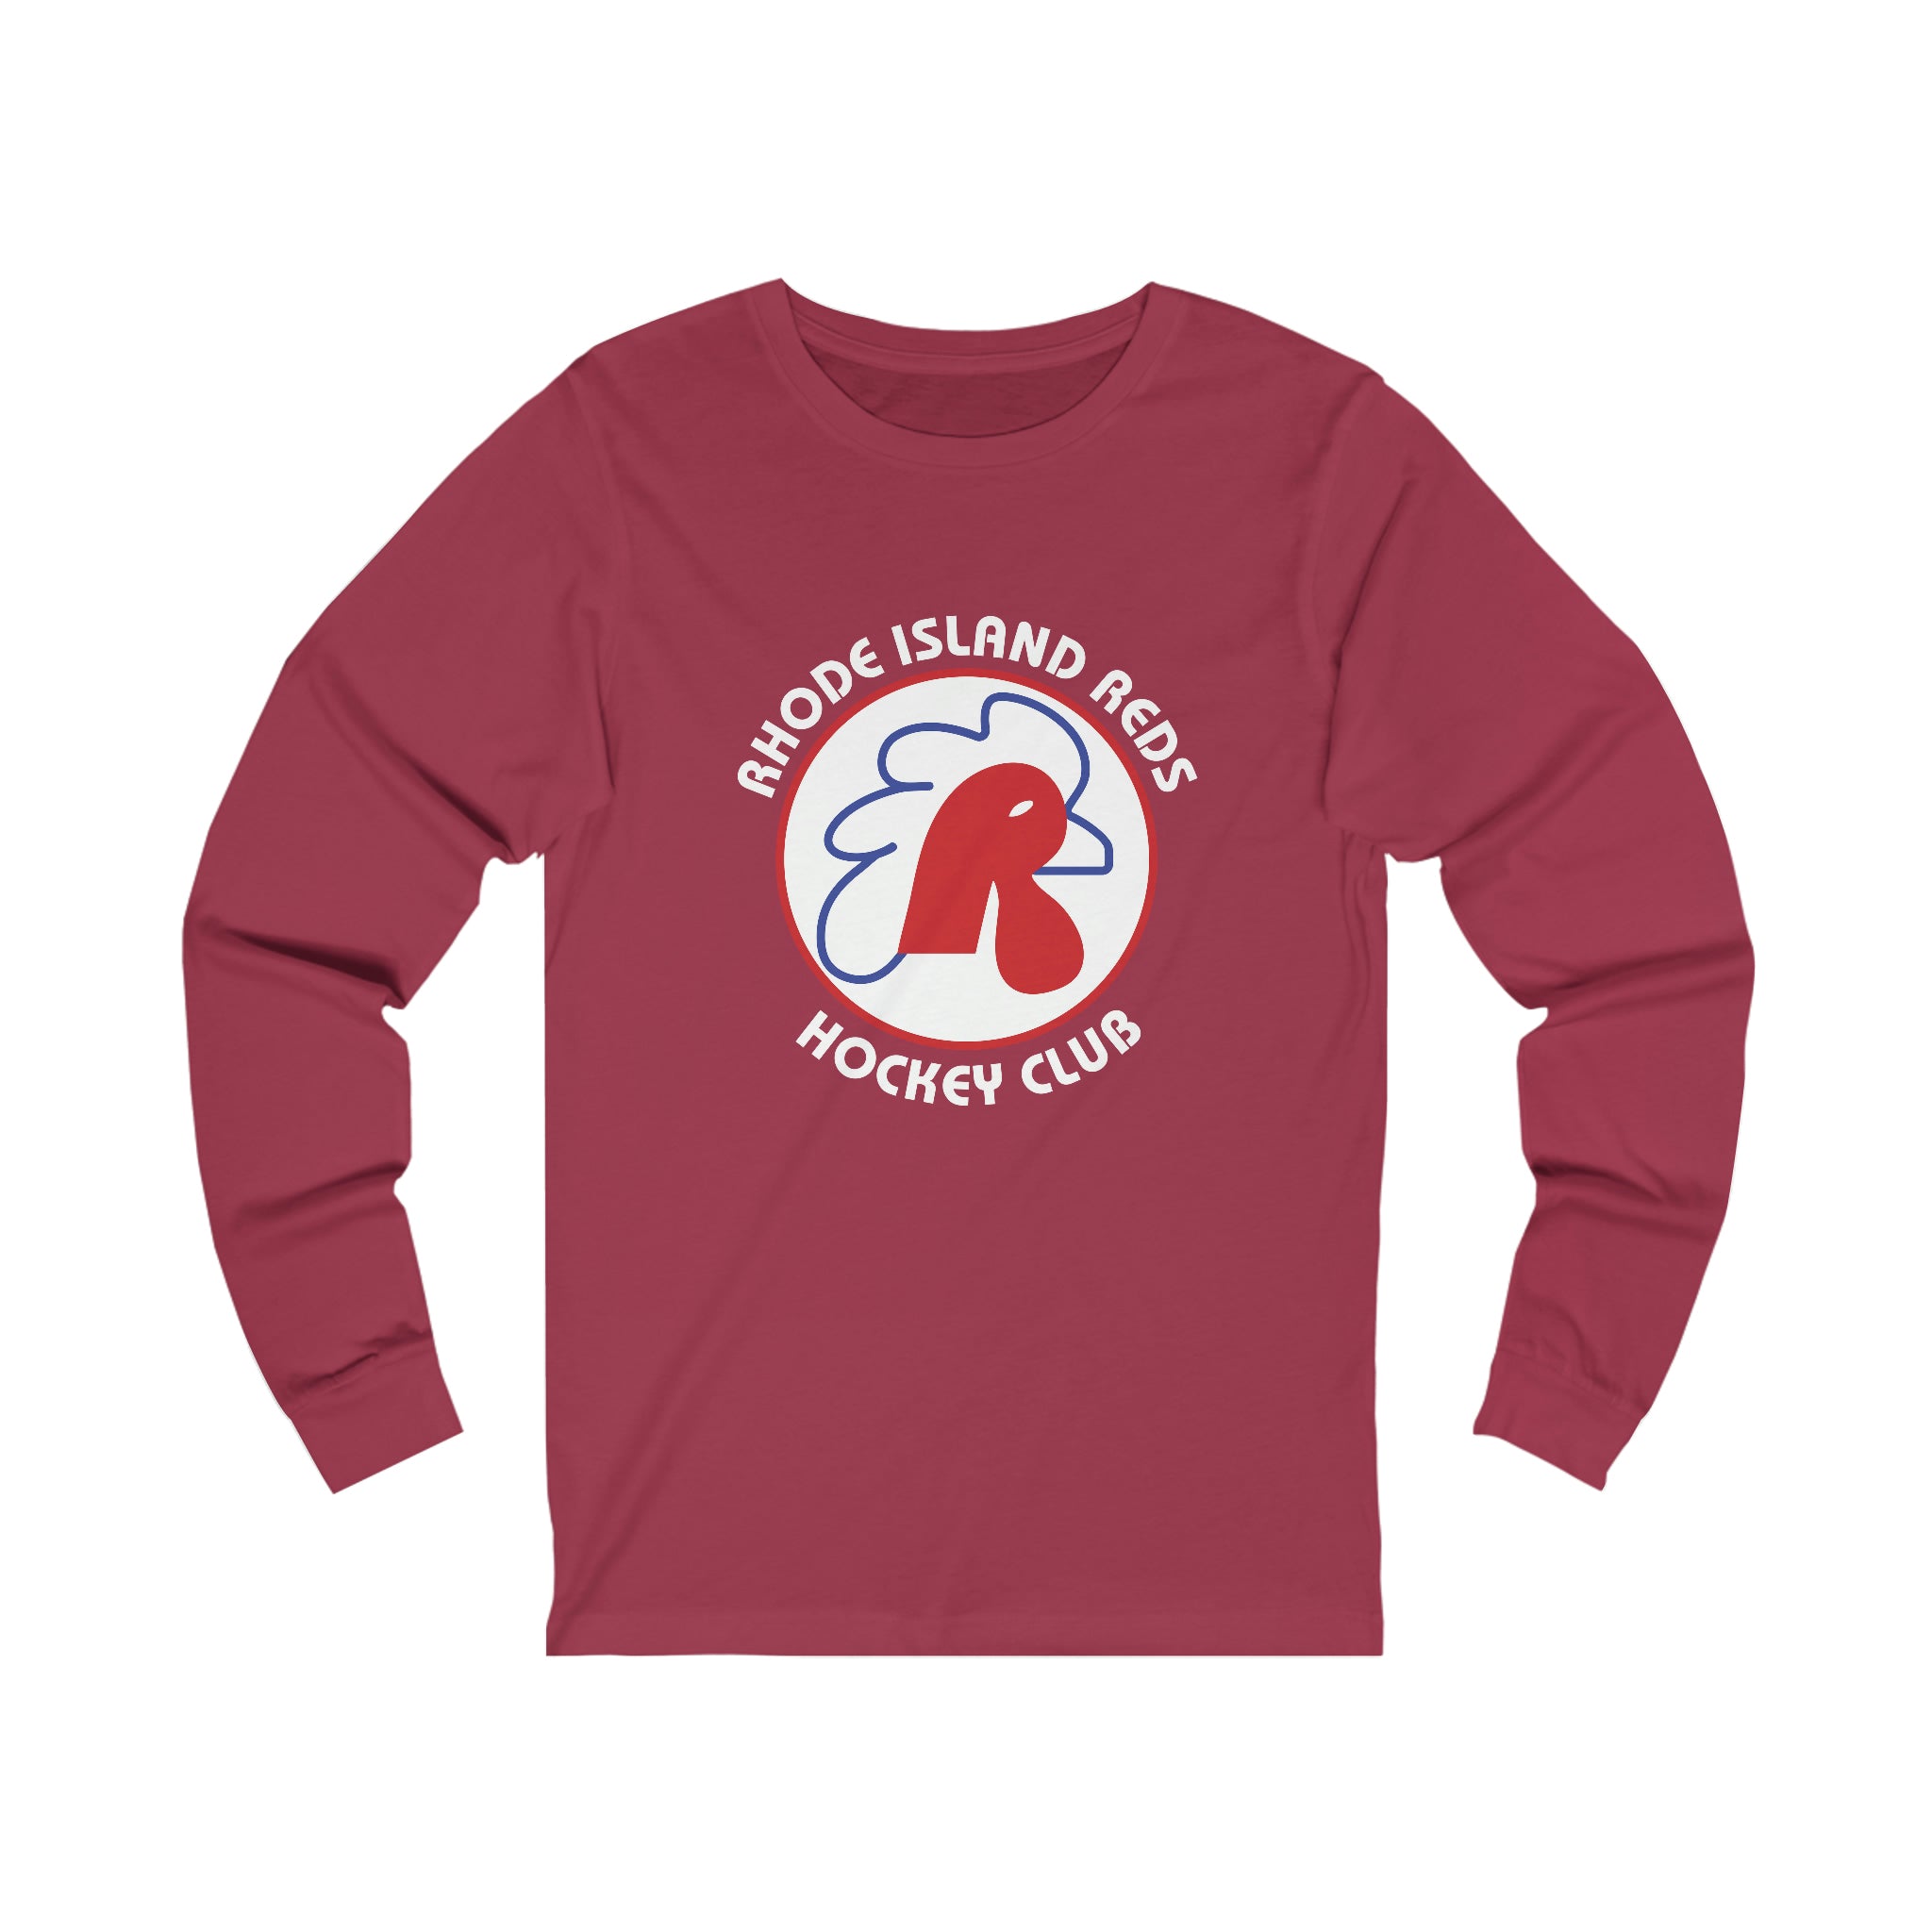 Rhode Island Reds Long Sleeve Shirt